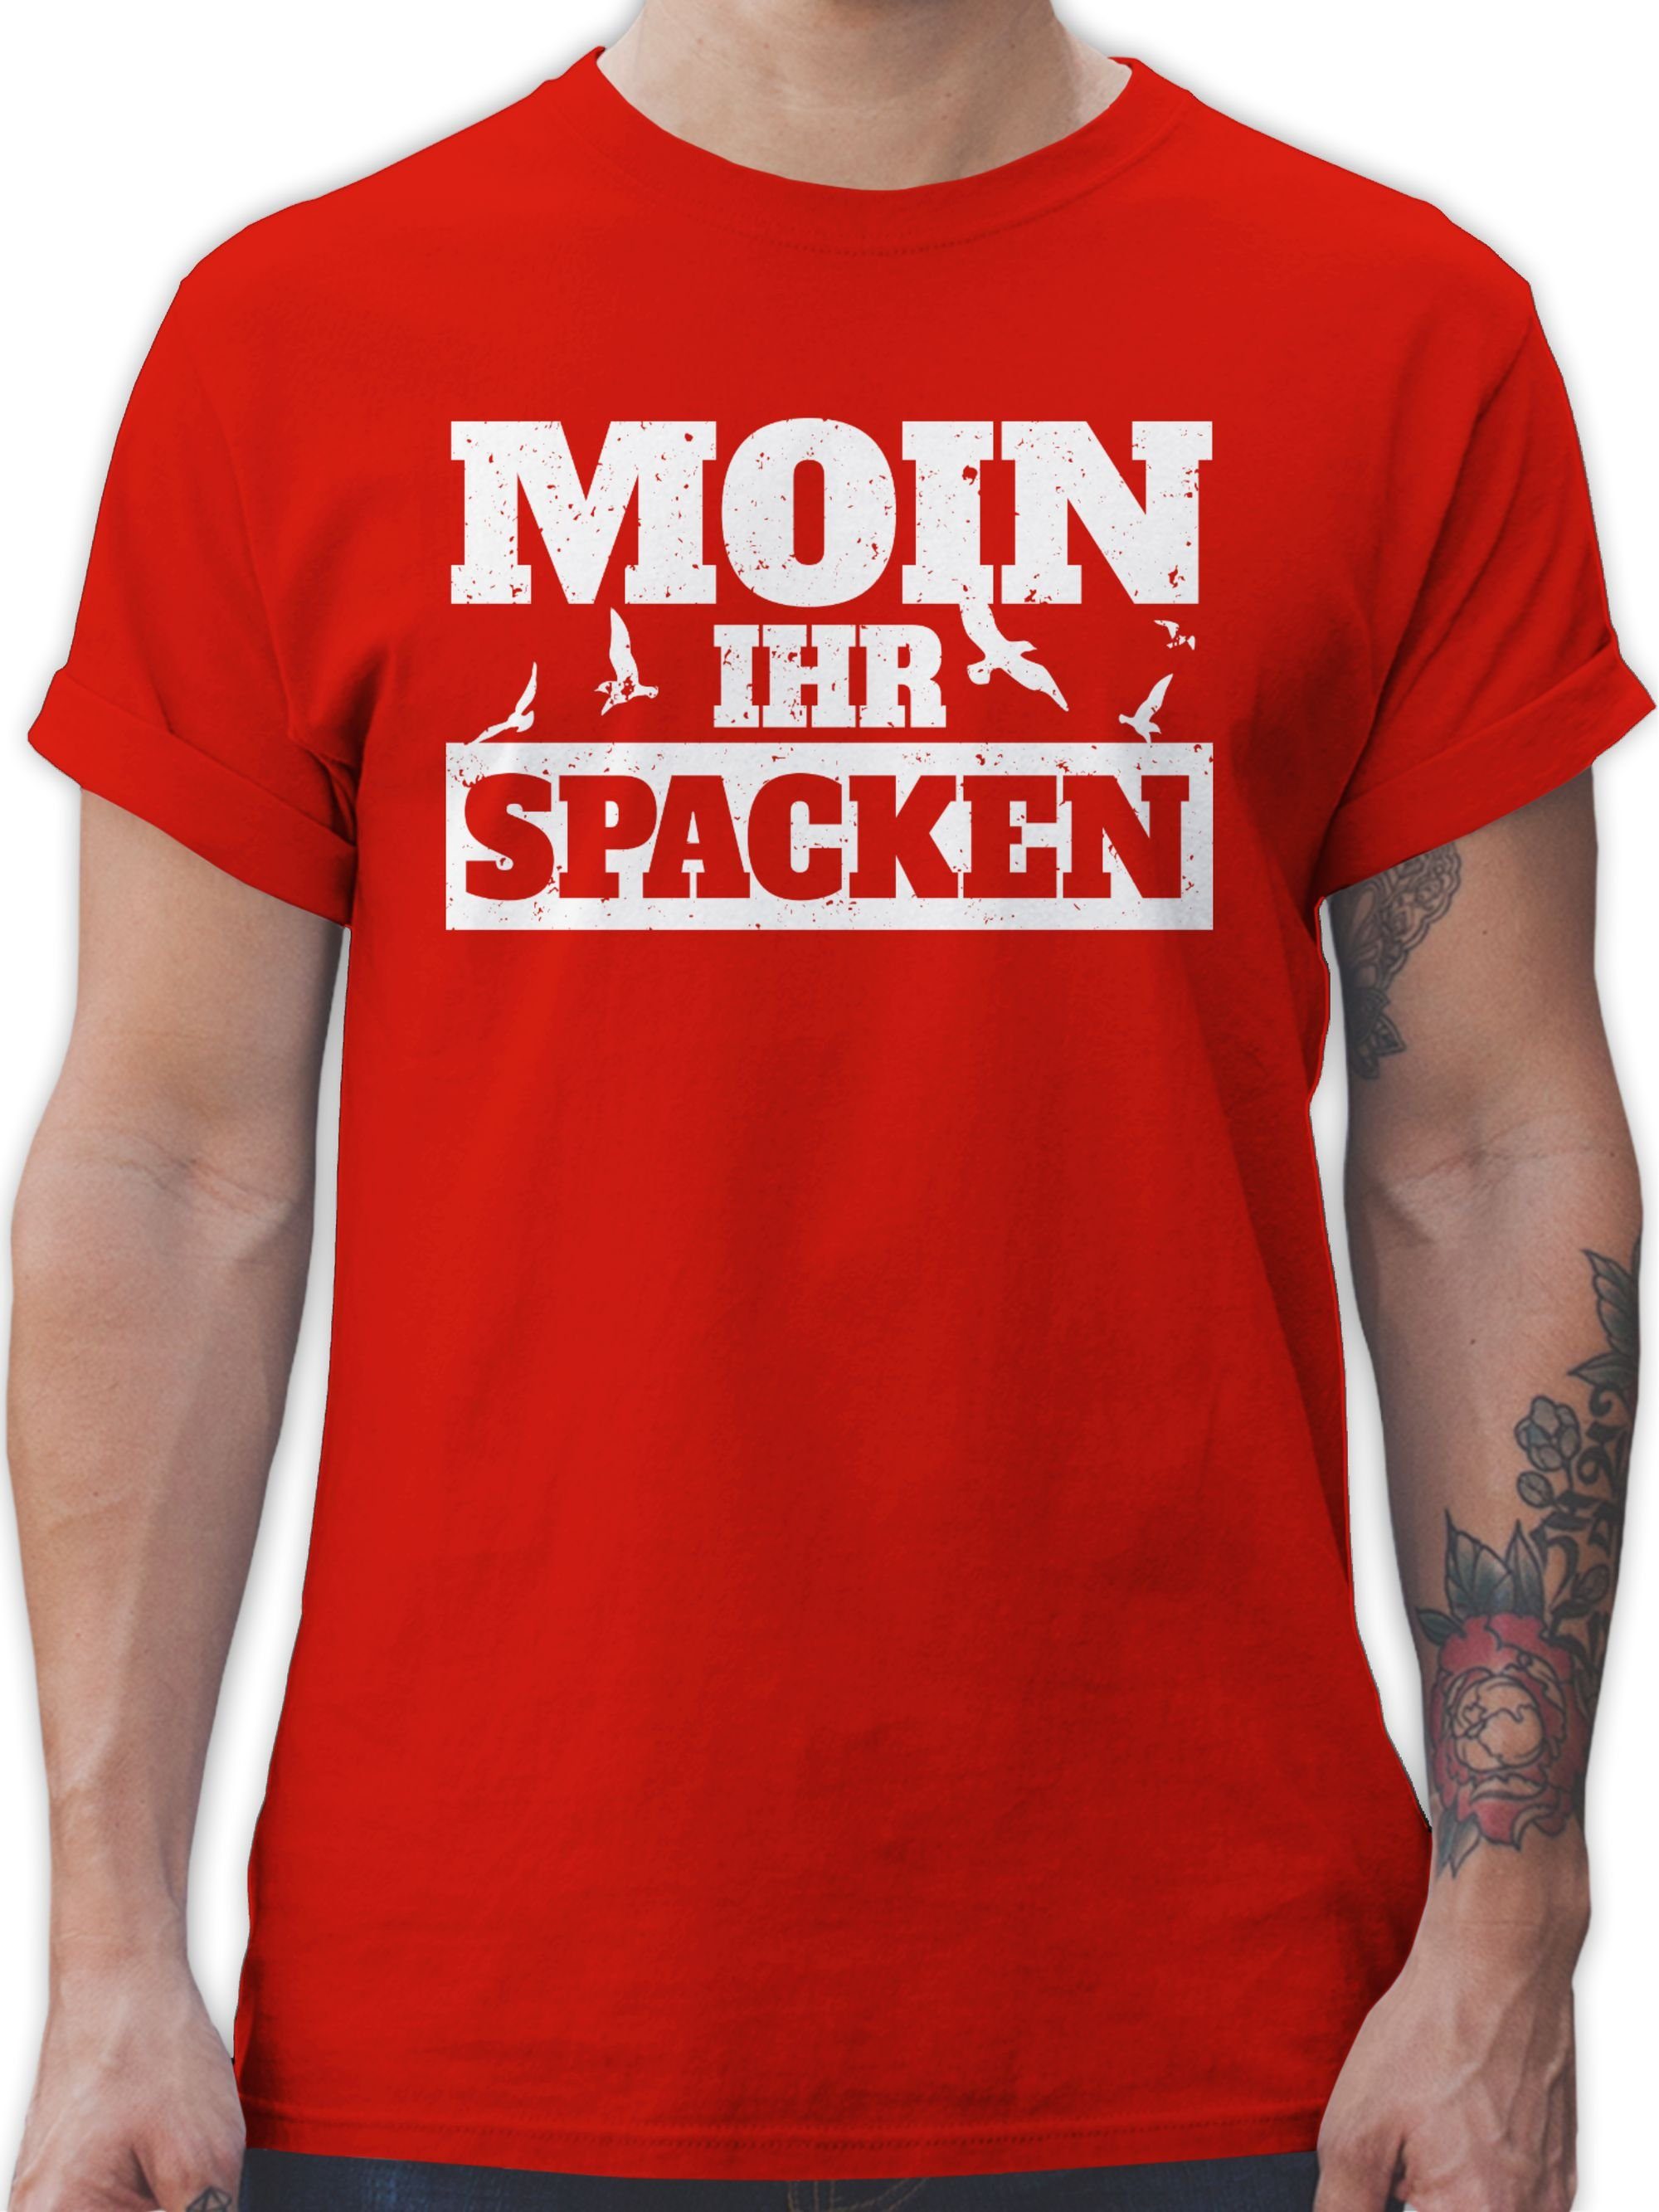 Shirtracer T-Shirt Moin ihr - Spacken weiß Rot 03 Sprüche Statement